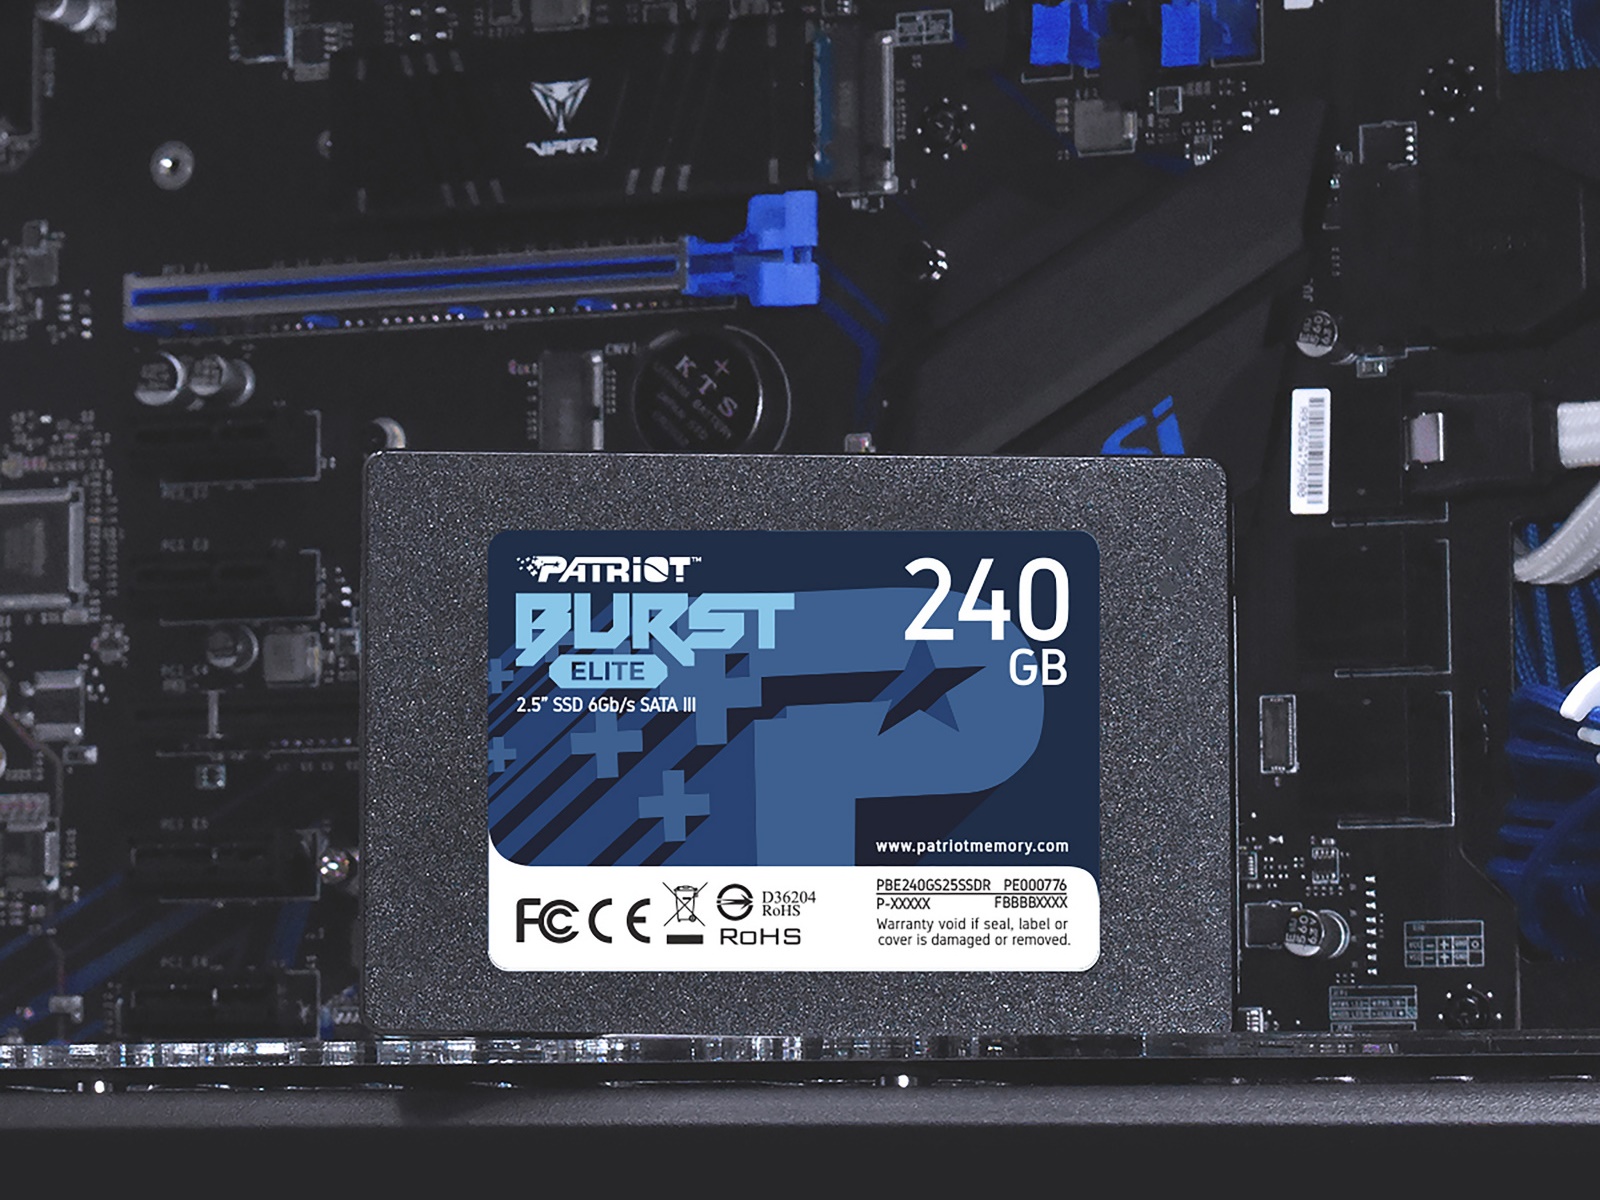 Interný SSD disk Patriot Burst Elite s kapacitou 240 GB ponúka vysoké prenosové rýchlosti, aby zabránil spomaľovaniu výkonu zo strany úložiska.